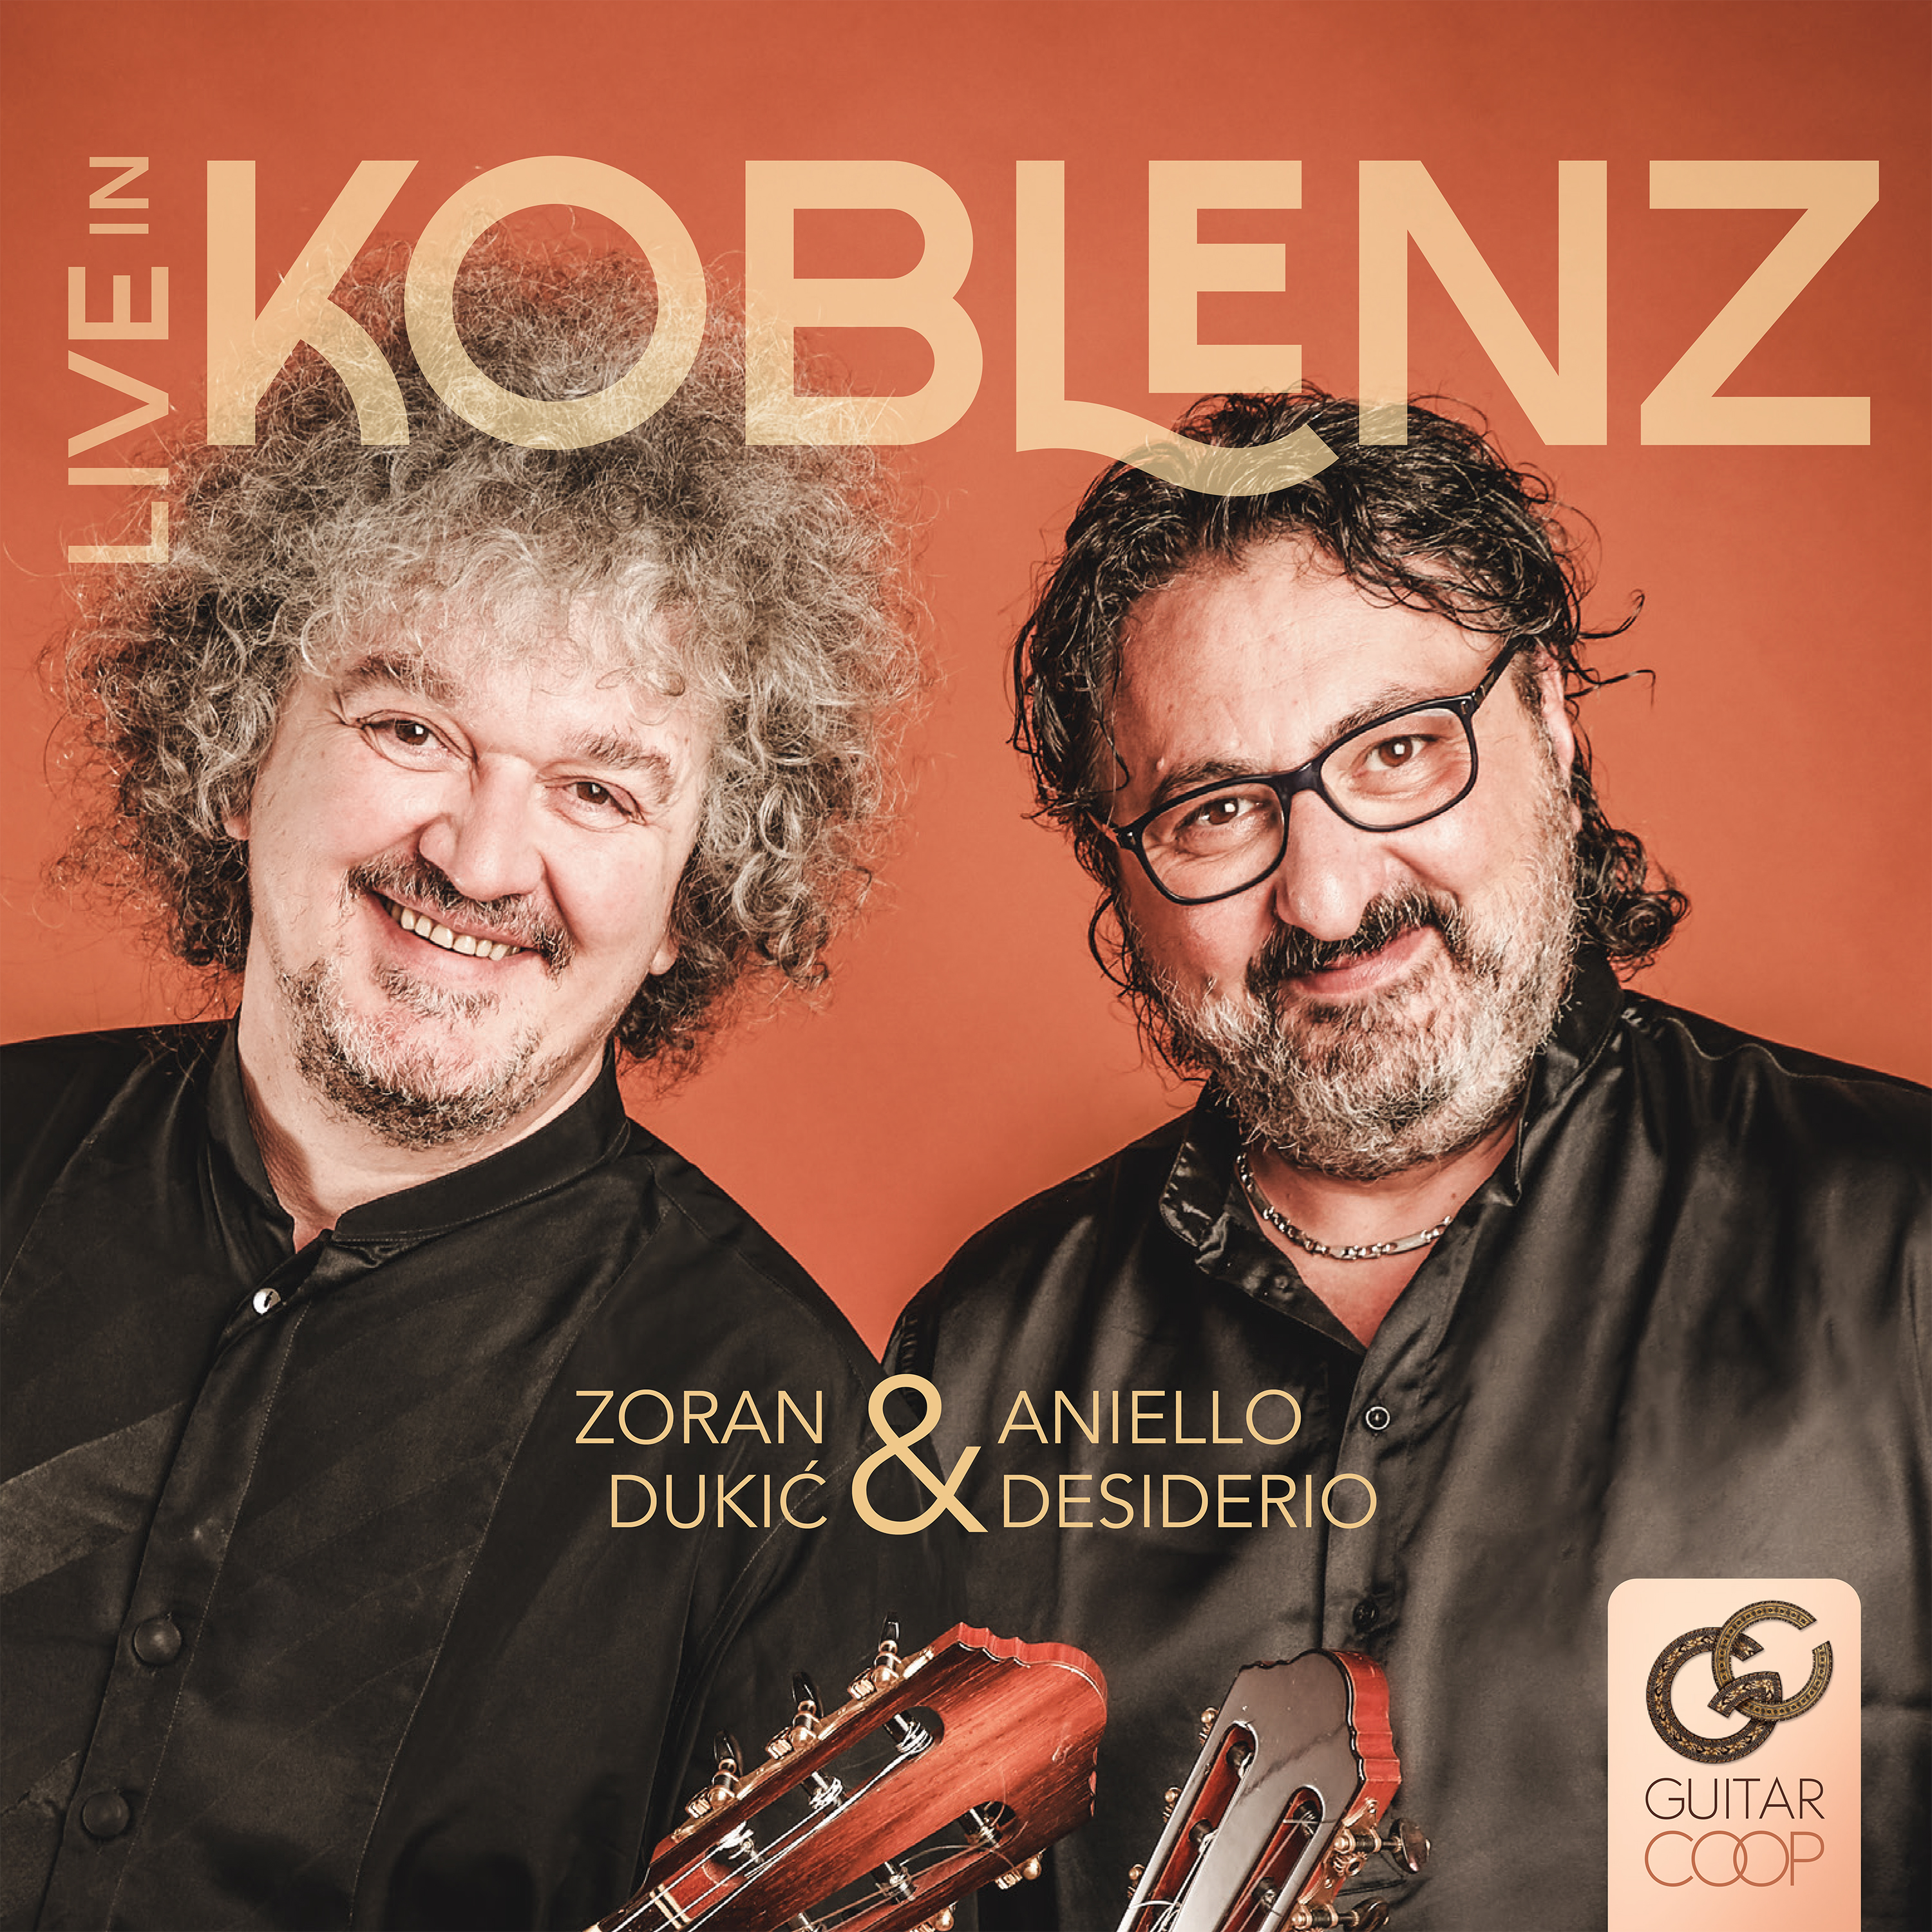 Aniello Desiderio & Zoran Dukic - Live in Koblenz